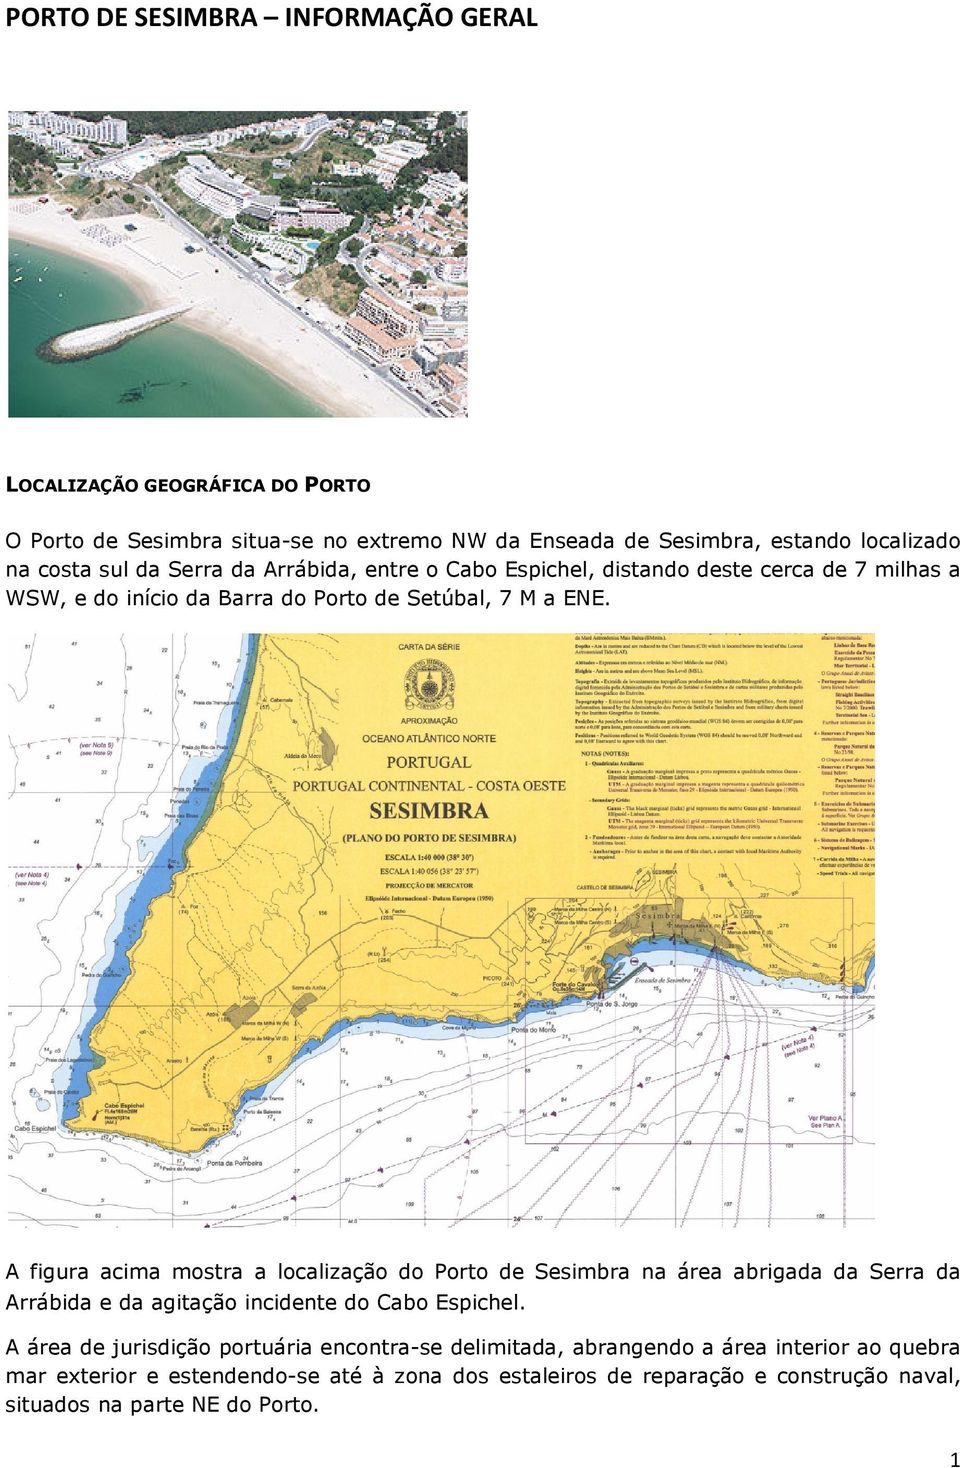 A figura acima mostra a localização do Porto de Sesimbra na área abrigada da Serra da Arrábida e da agitação incidente do Cabo Espichel.